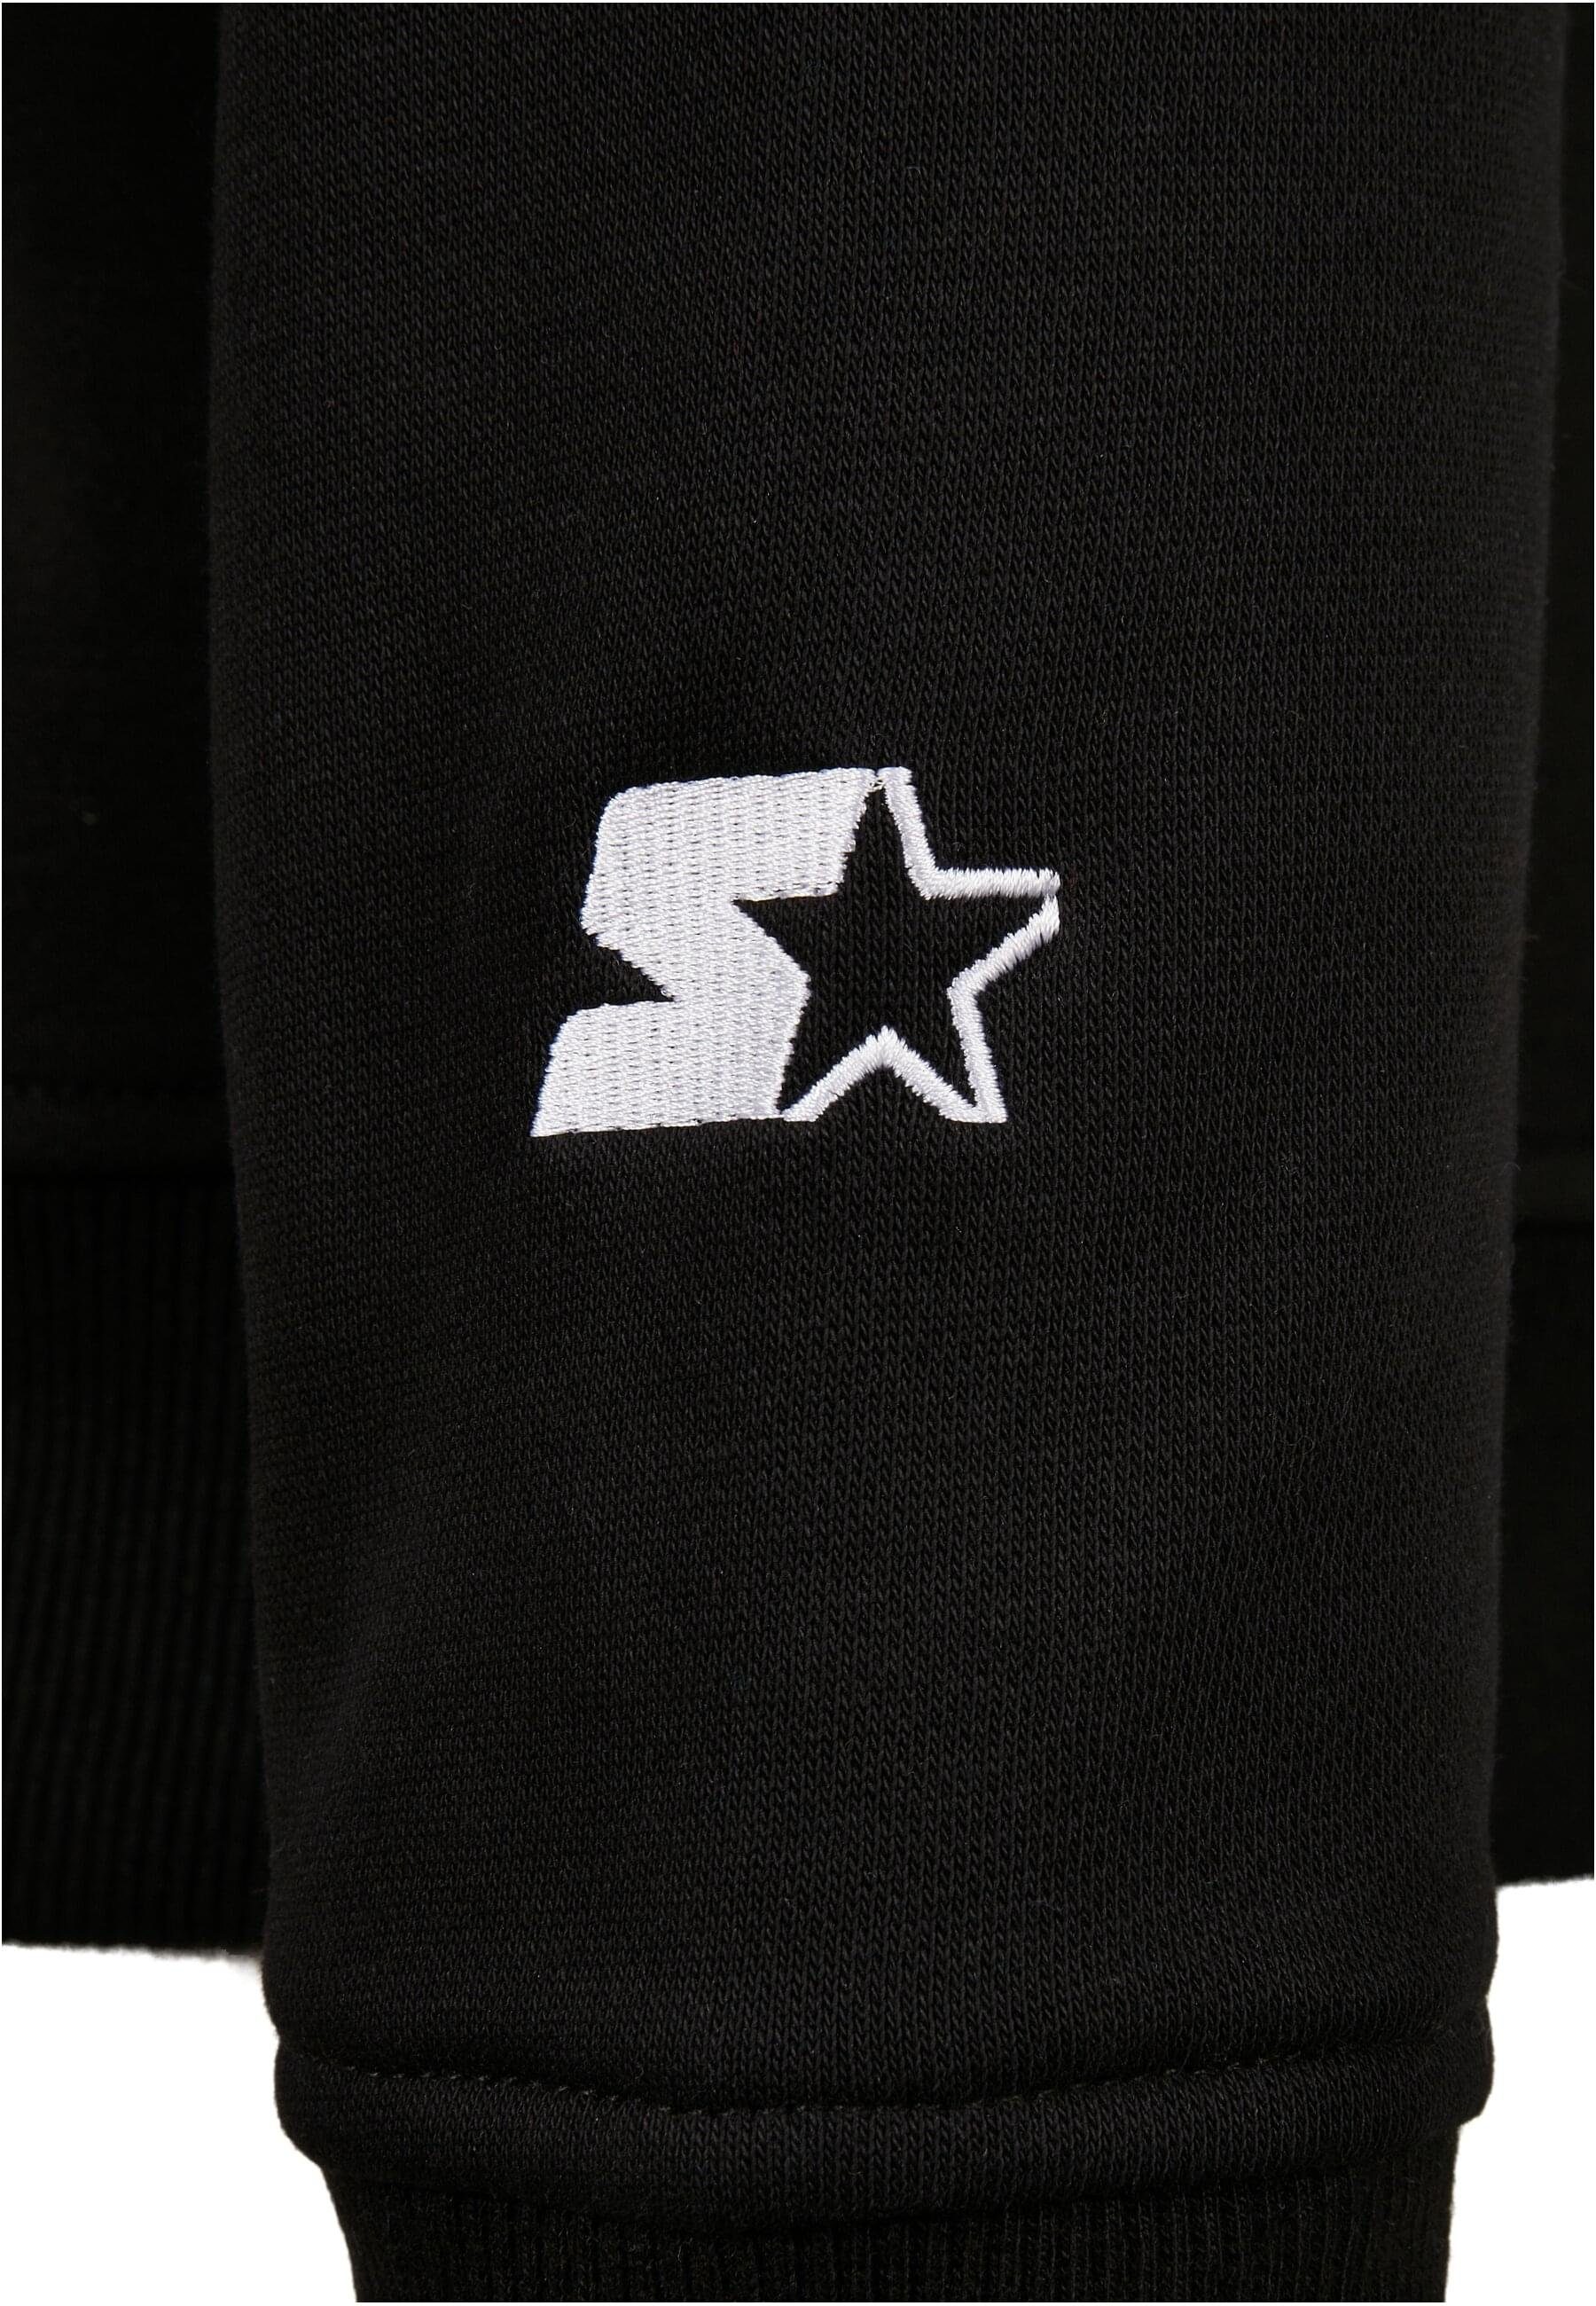 (1-tlg) Sweater black Starter Classic Logo Starter The Hoody Herren